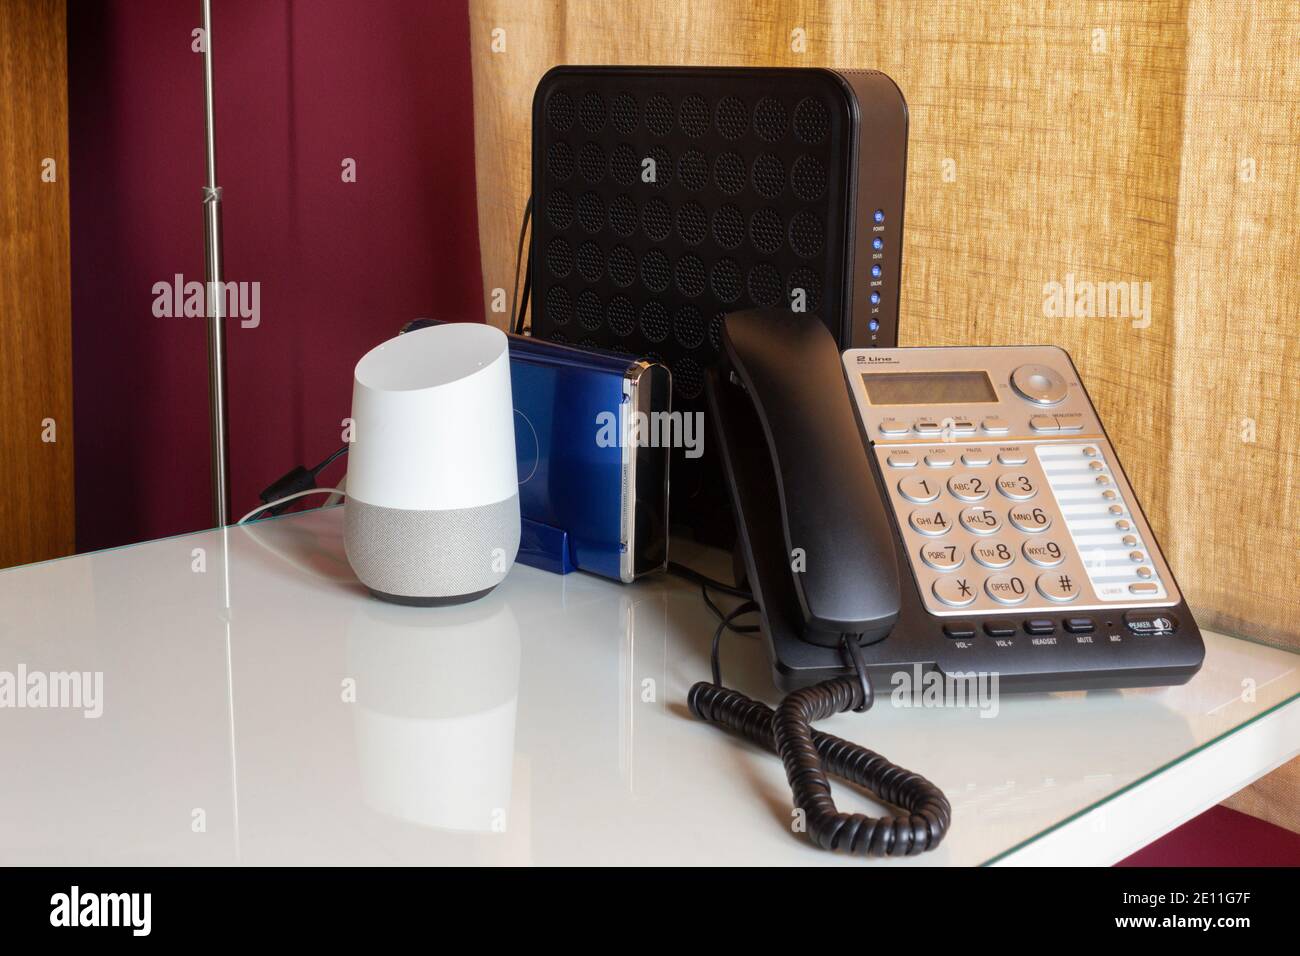 bureau à domicile équipé d'un assistant intelligent virtuel à commande vocale, d'un téléphone fixe et de deux routeurs sur un bureau blanc bordeaux et jaune Banque D'Images